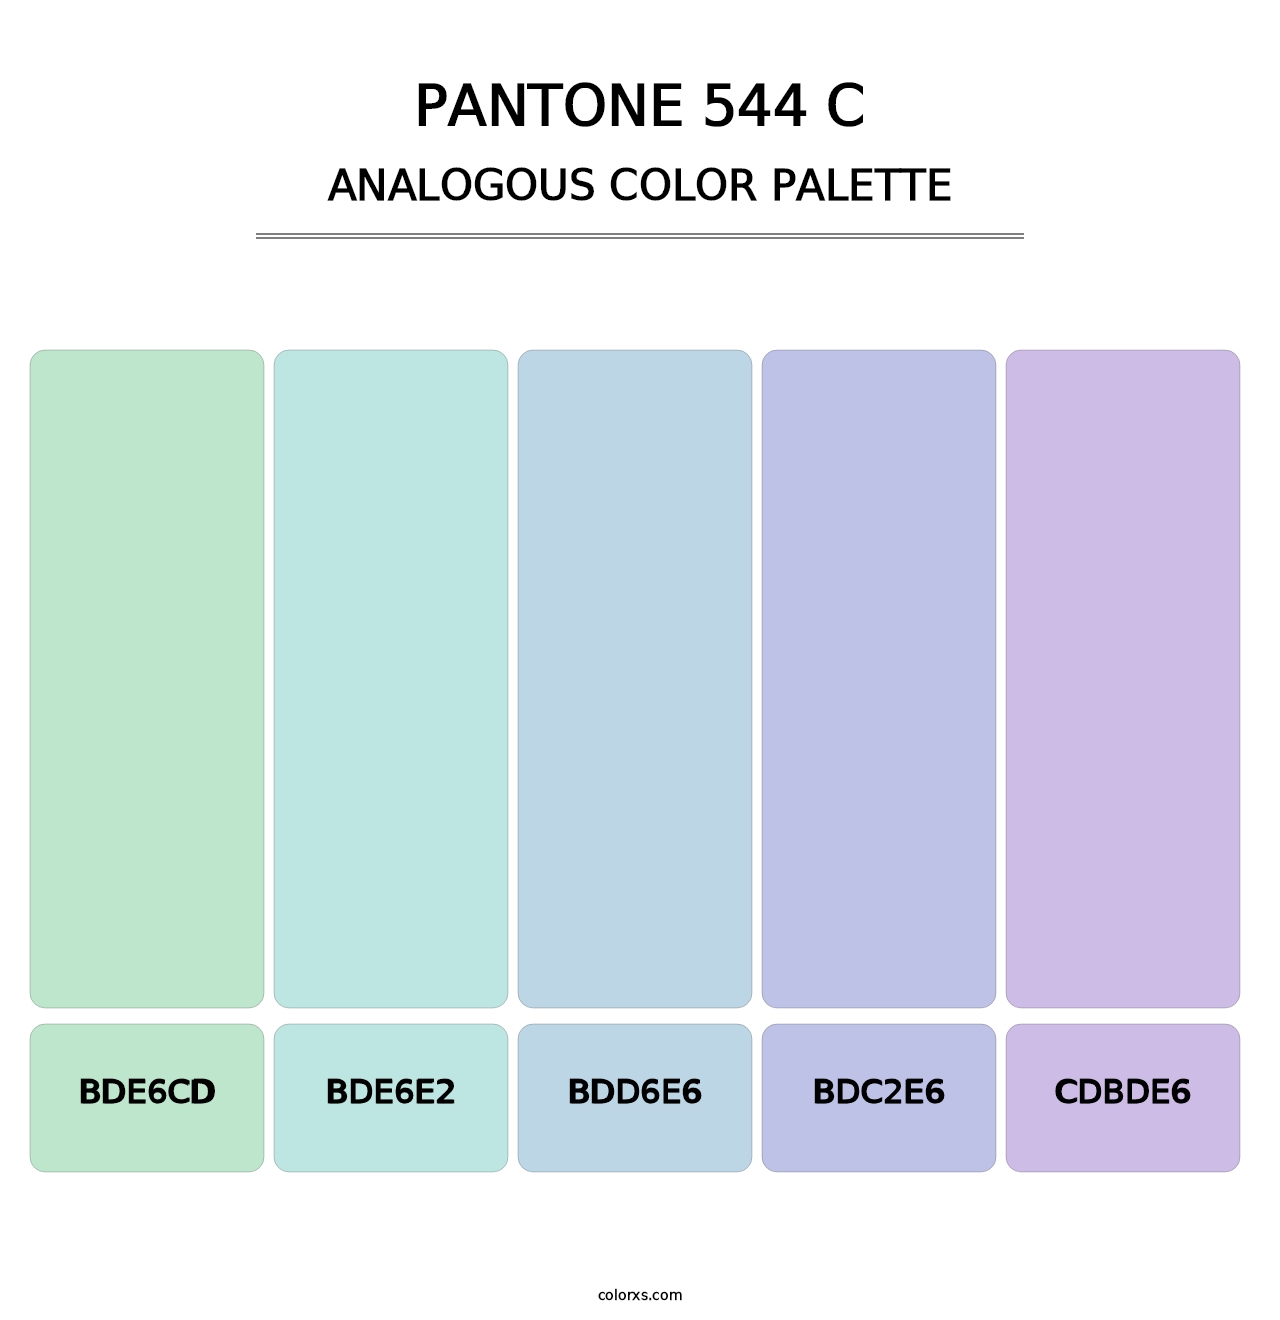 PANTONE 544 C - Analogous Color Palette